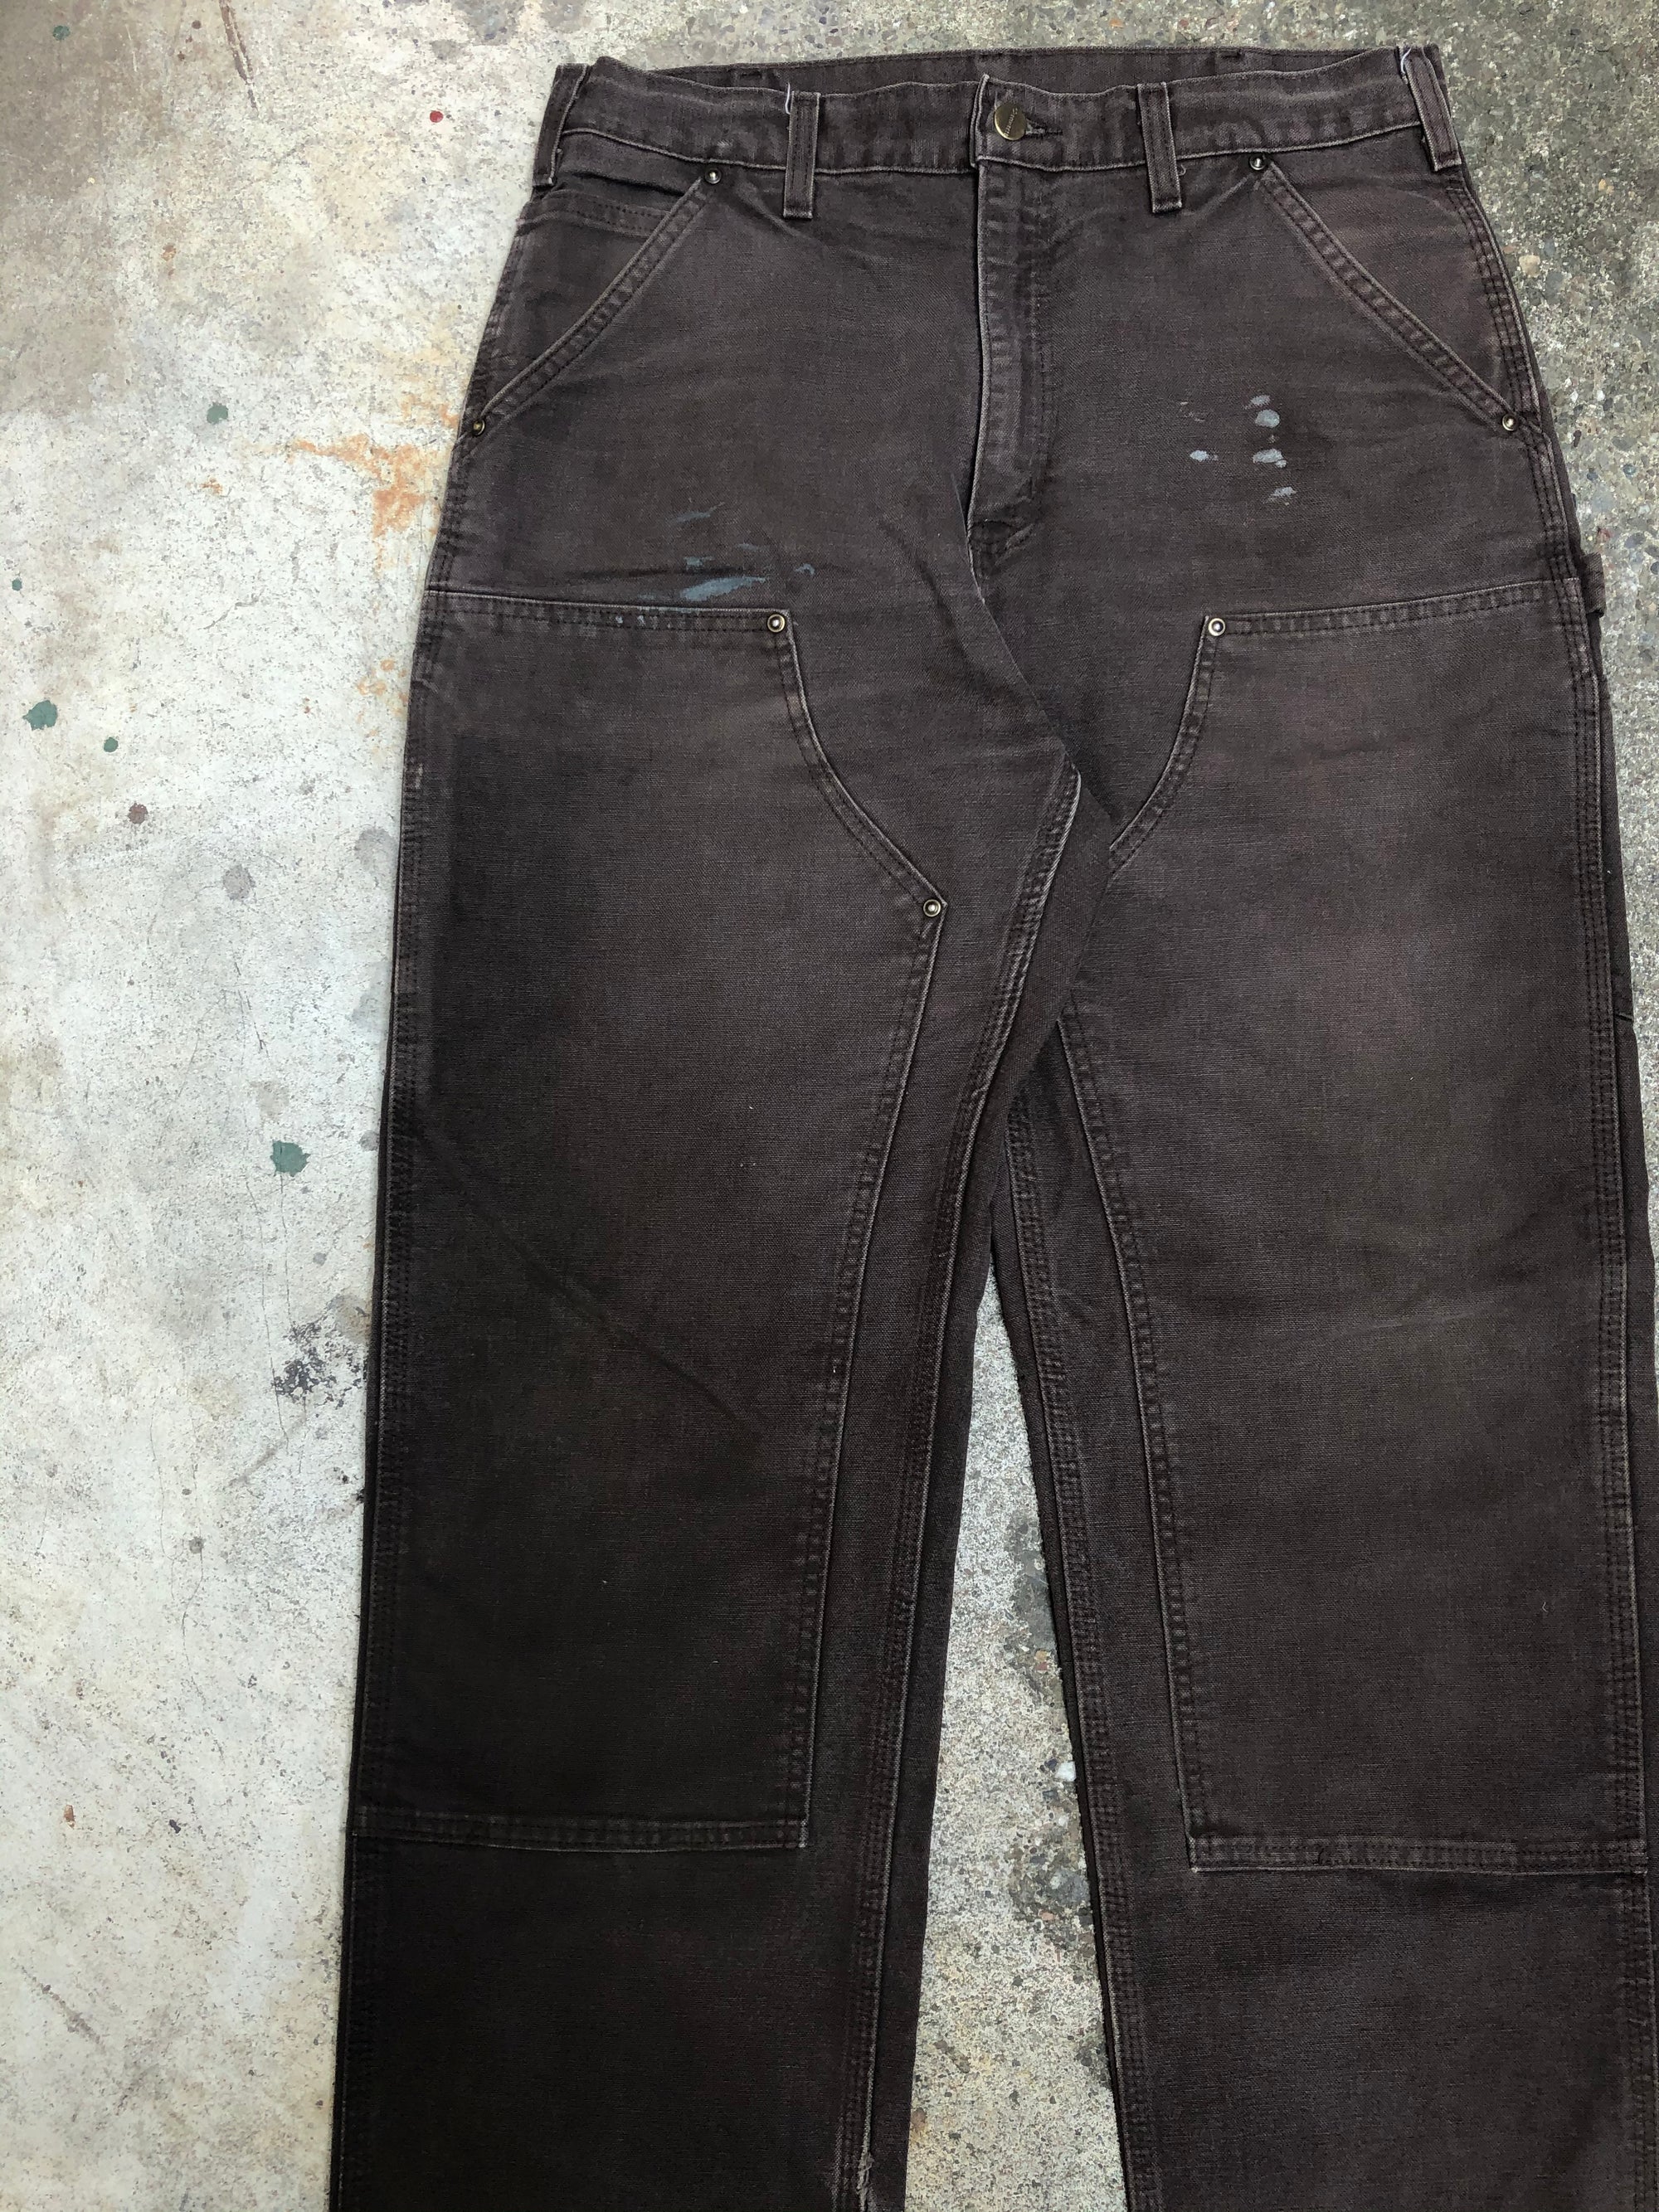 Carhartt B136 Dark Brown Double Front Knee Work Pants (32X33)